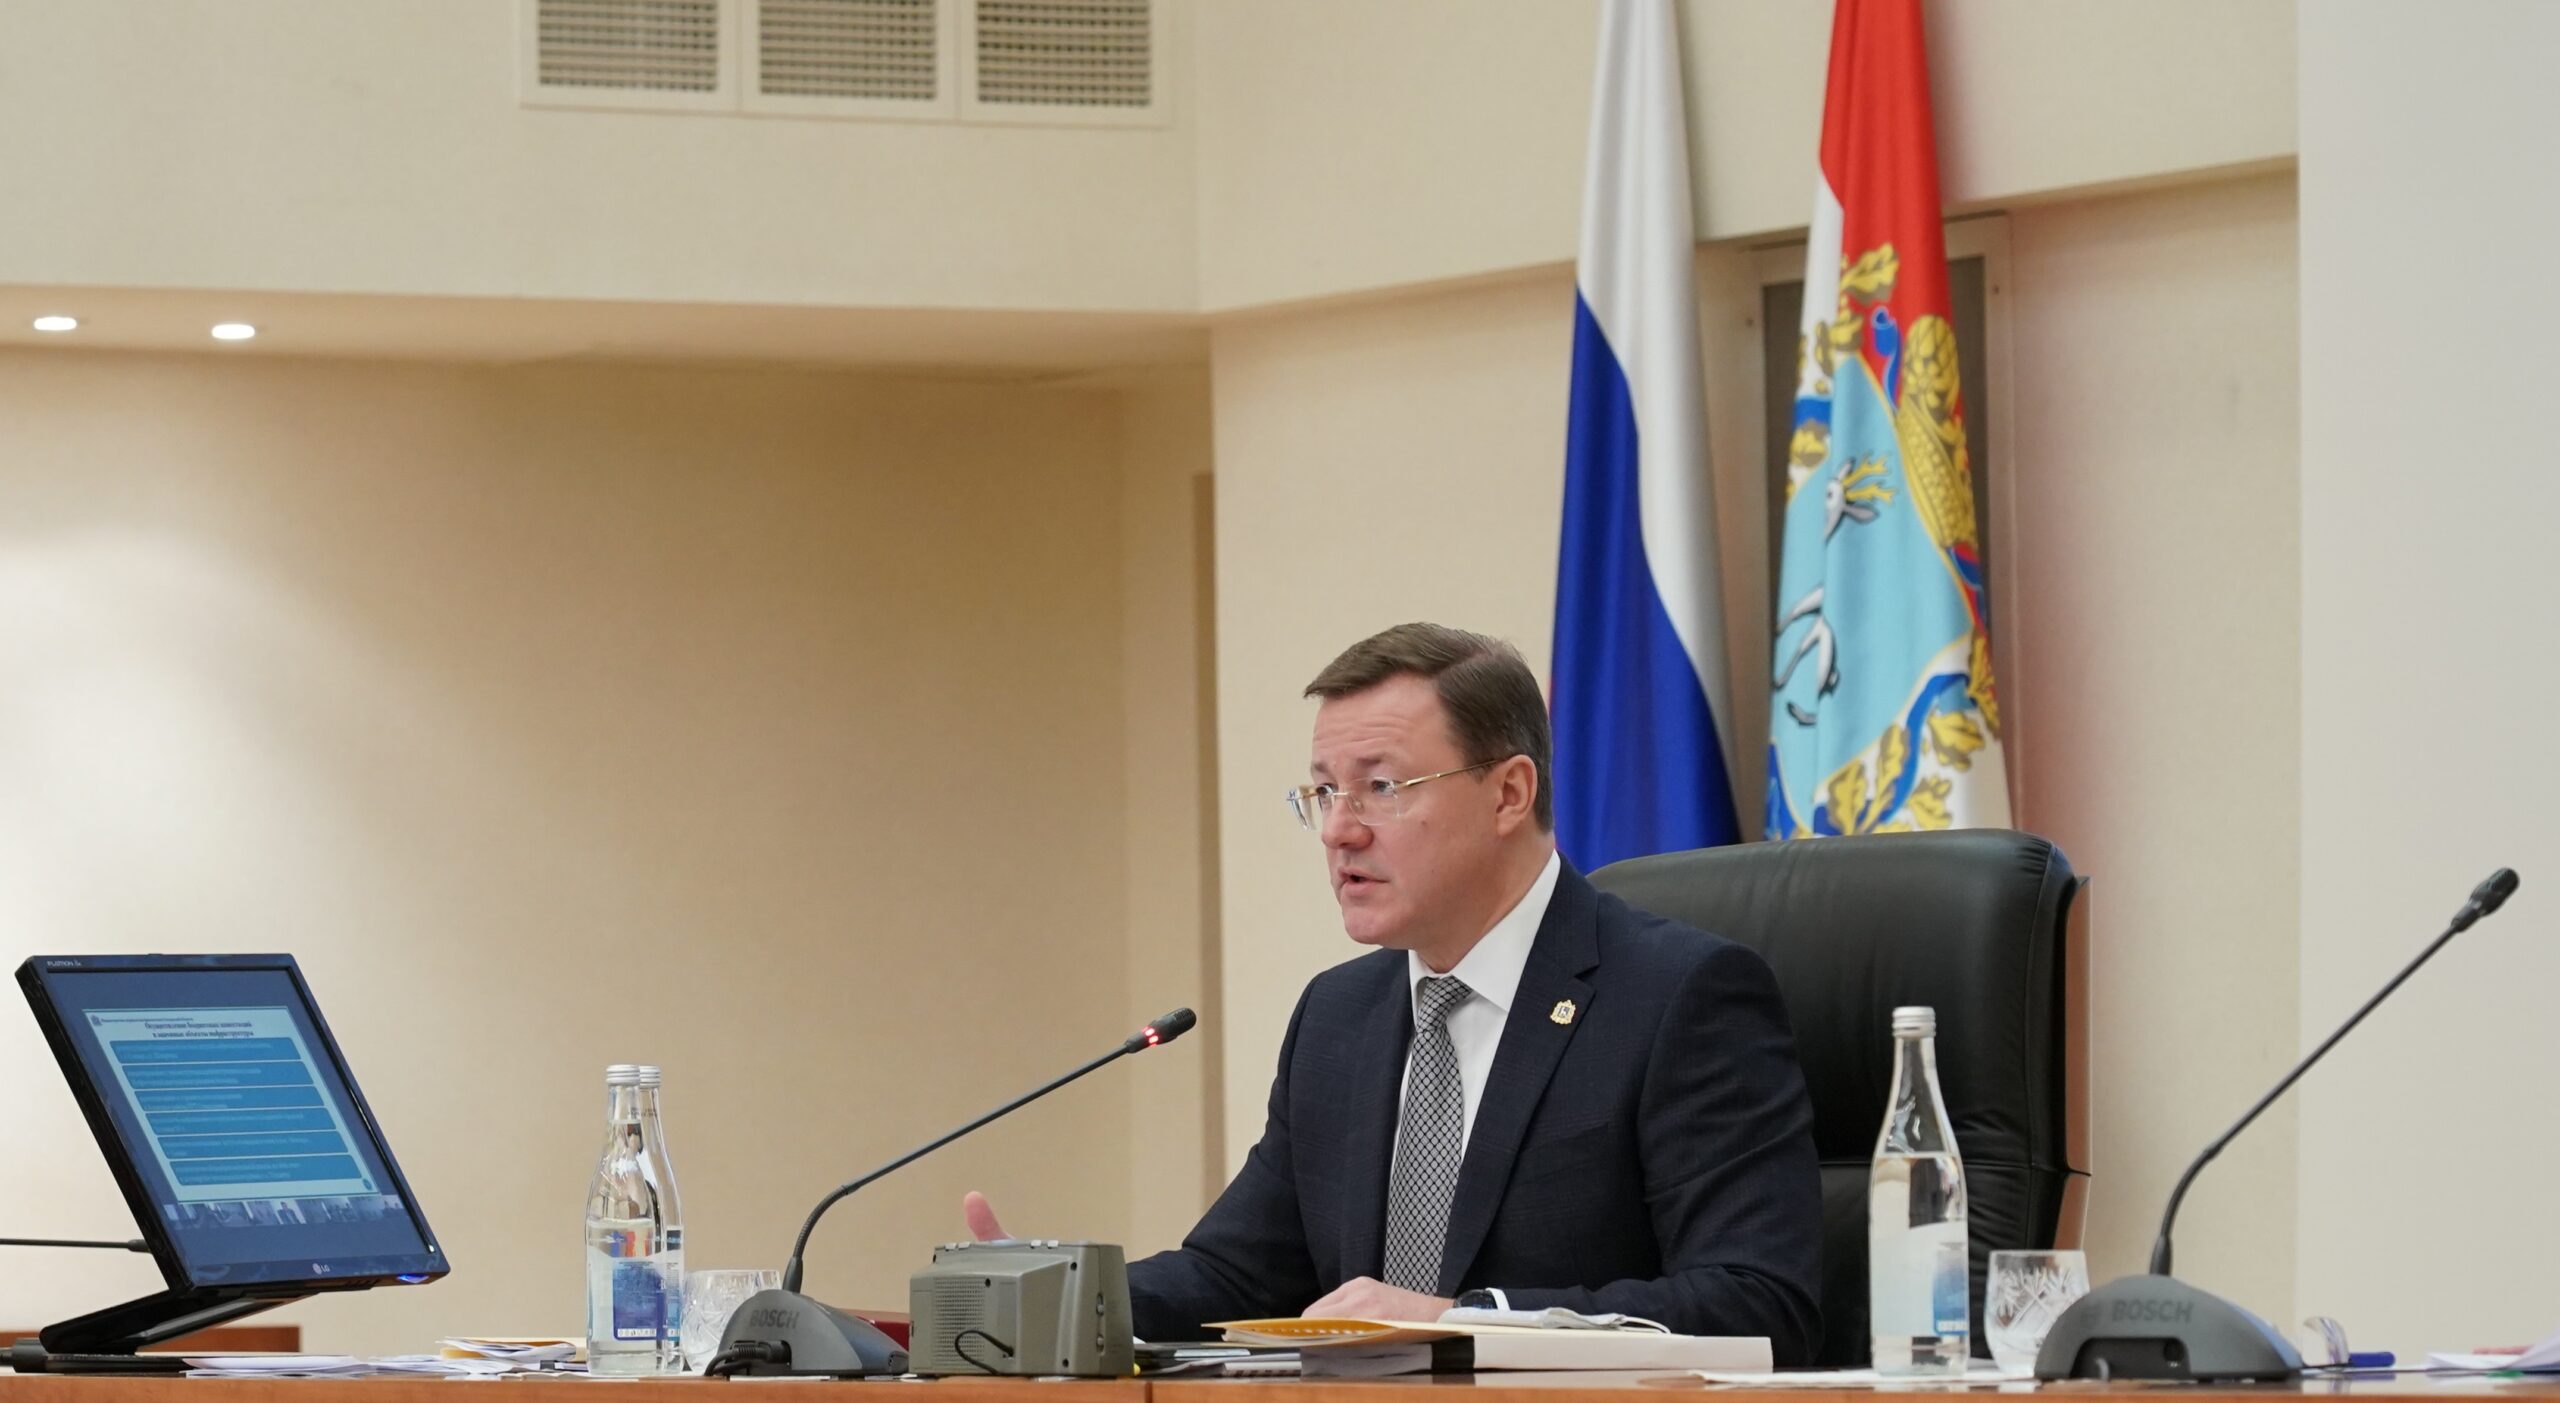 Расширенное заседание Правительства Самарской области по вопросам социально-экономического развития региона и формирования проекта регионального бюджета на 2022 – 2024 года.